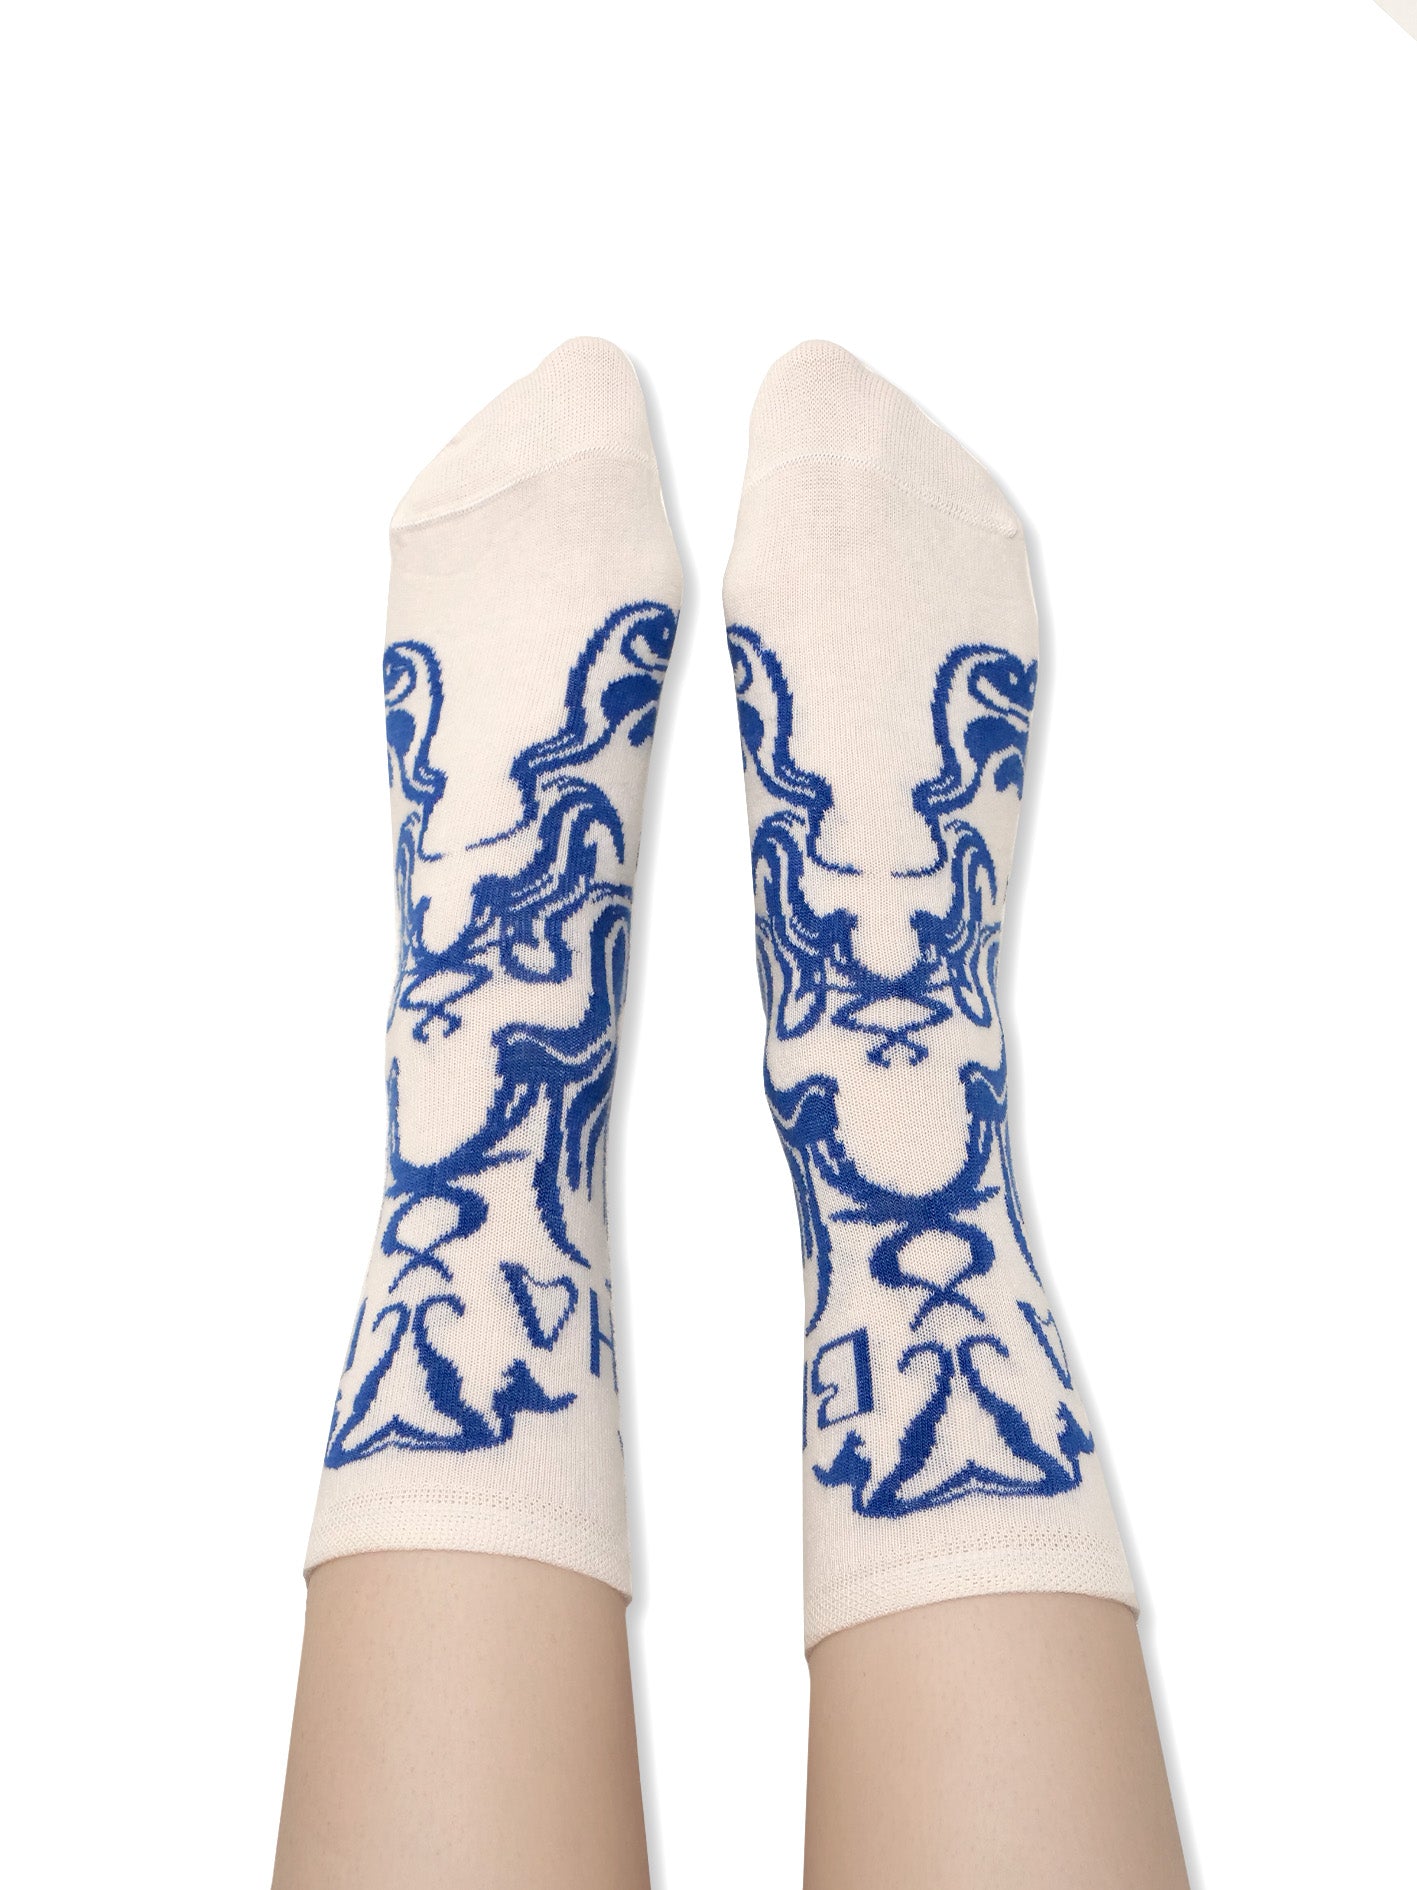 Charapé // white socks